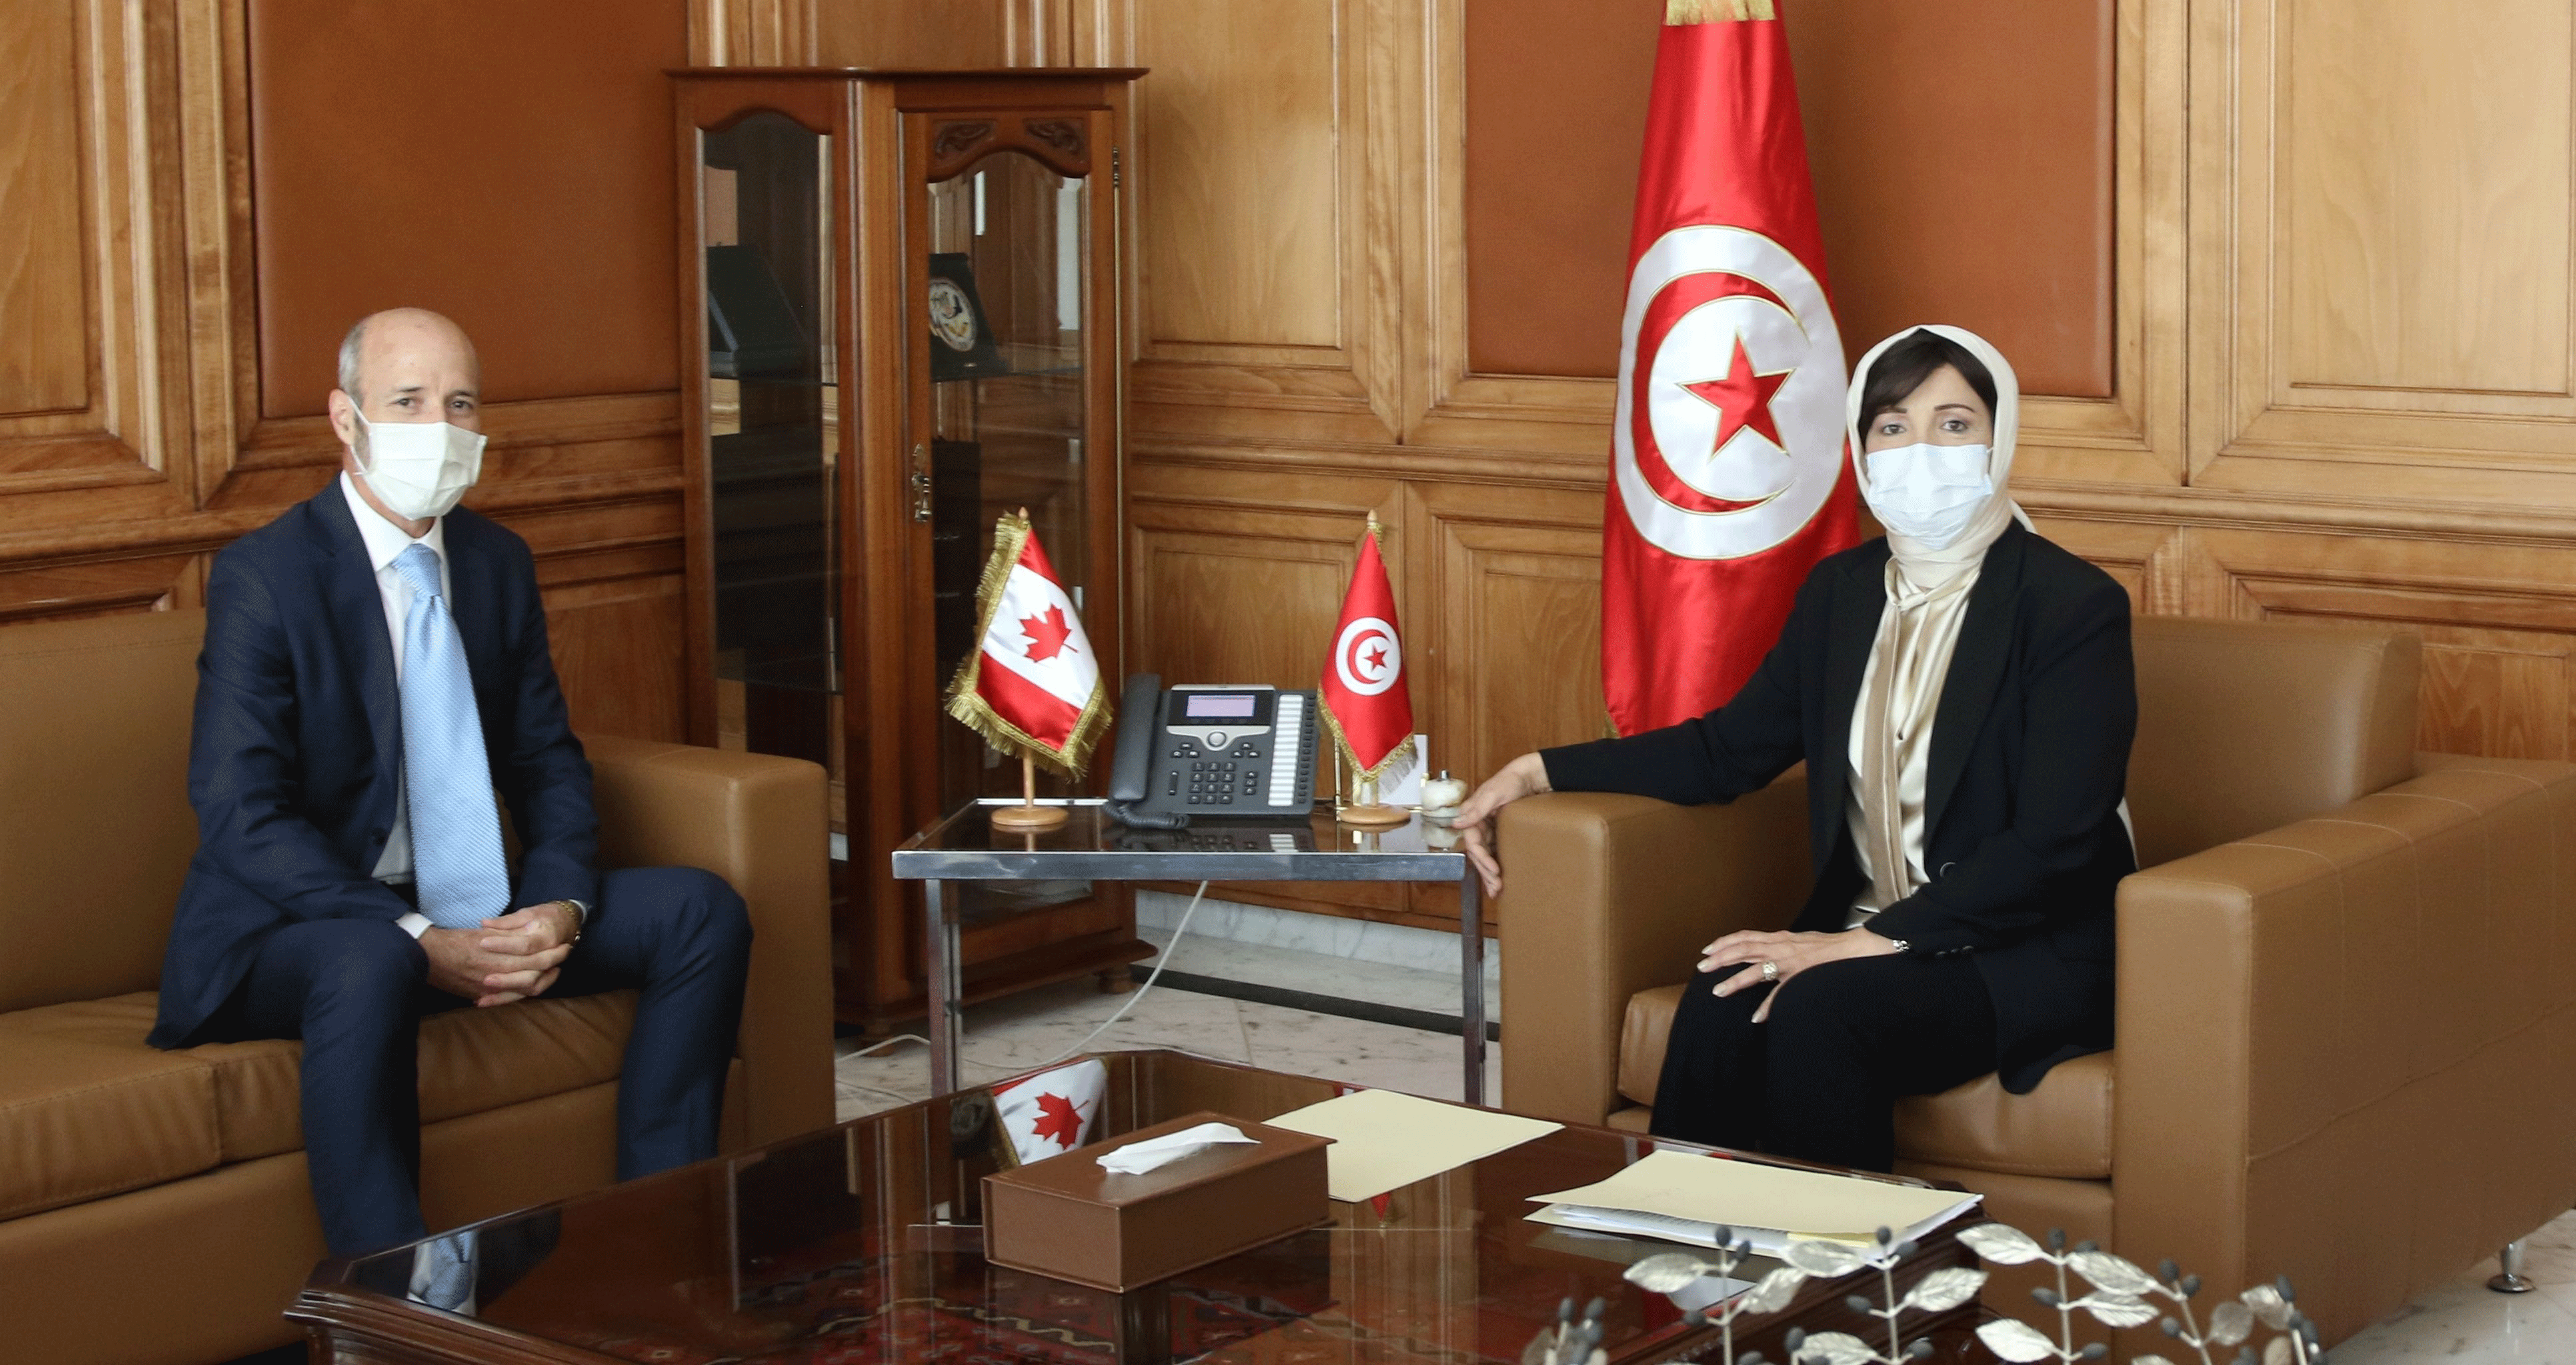 La ministre des domaines de l’Etat rencontre l’ambassadeur du Canada en Tunisie.